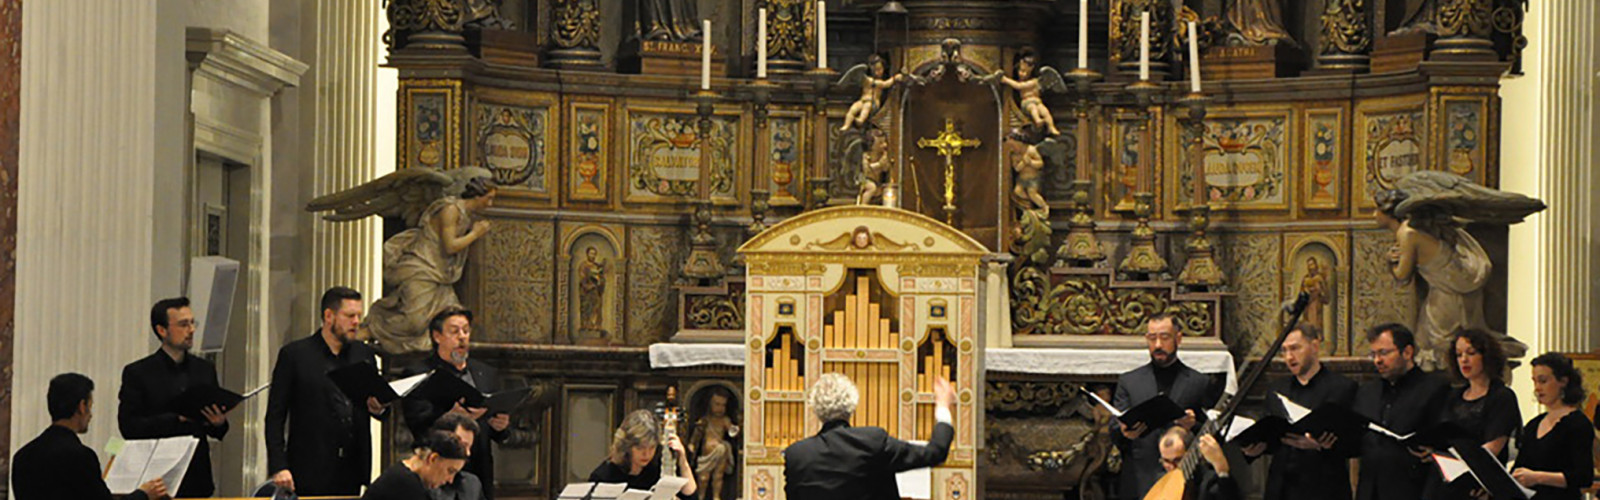 Het Monteverdi-orgel van het NMF